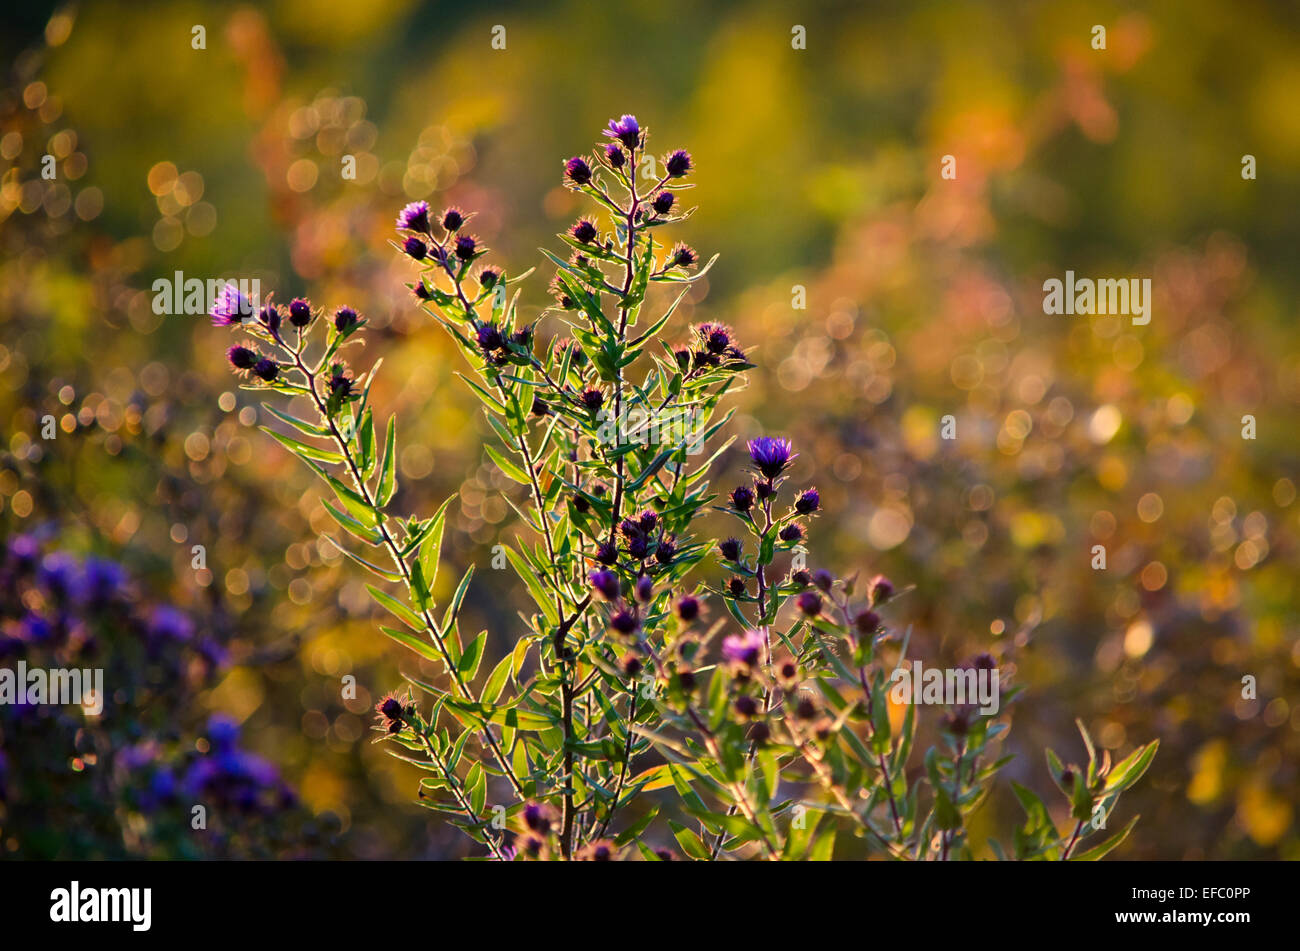 Aster mauve des fleurs dans une prairie de l'automne. Banque D'Images